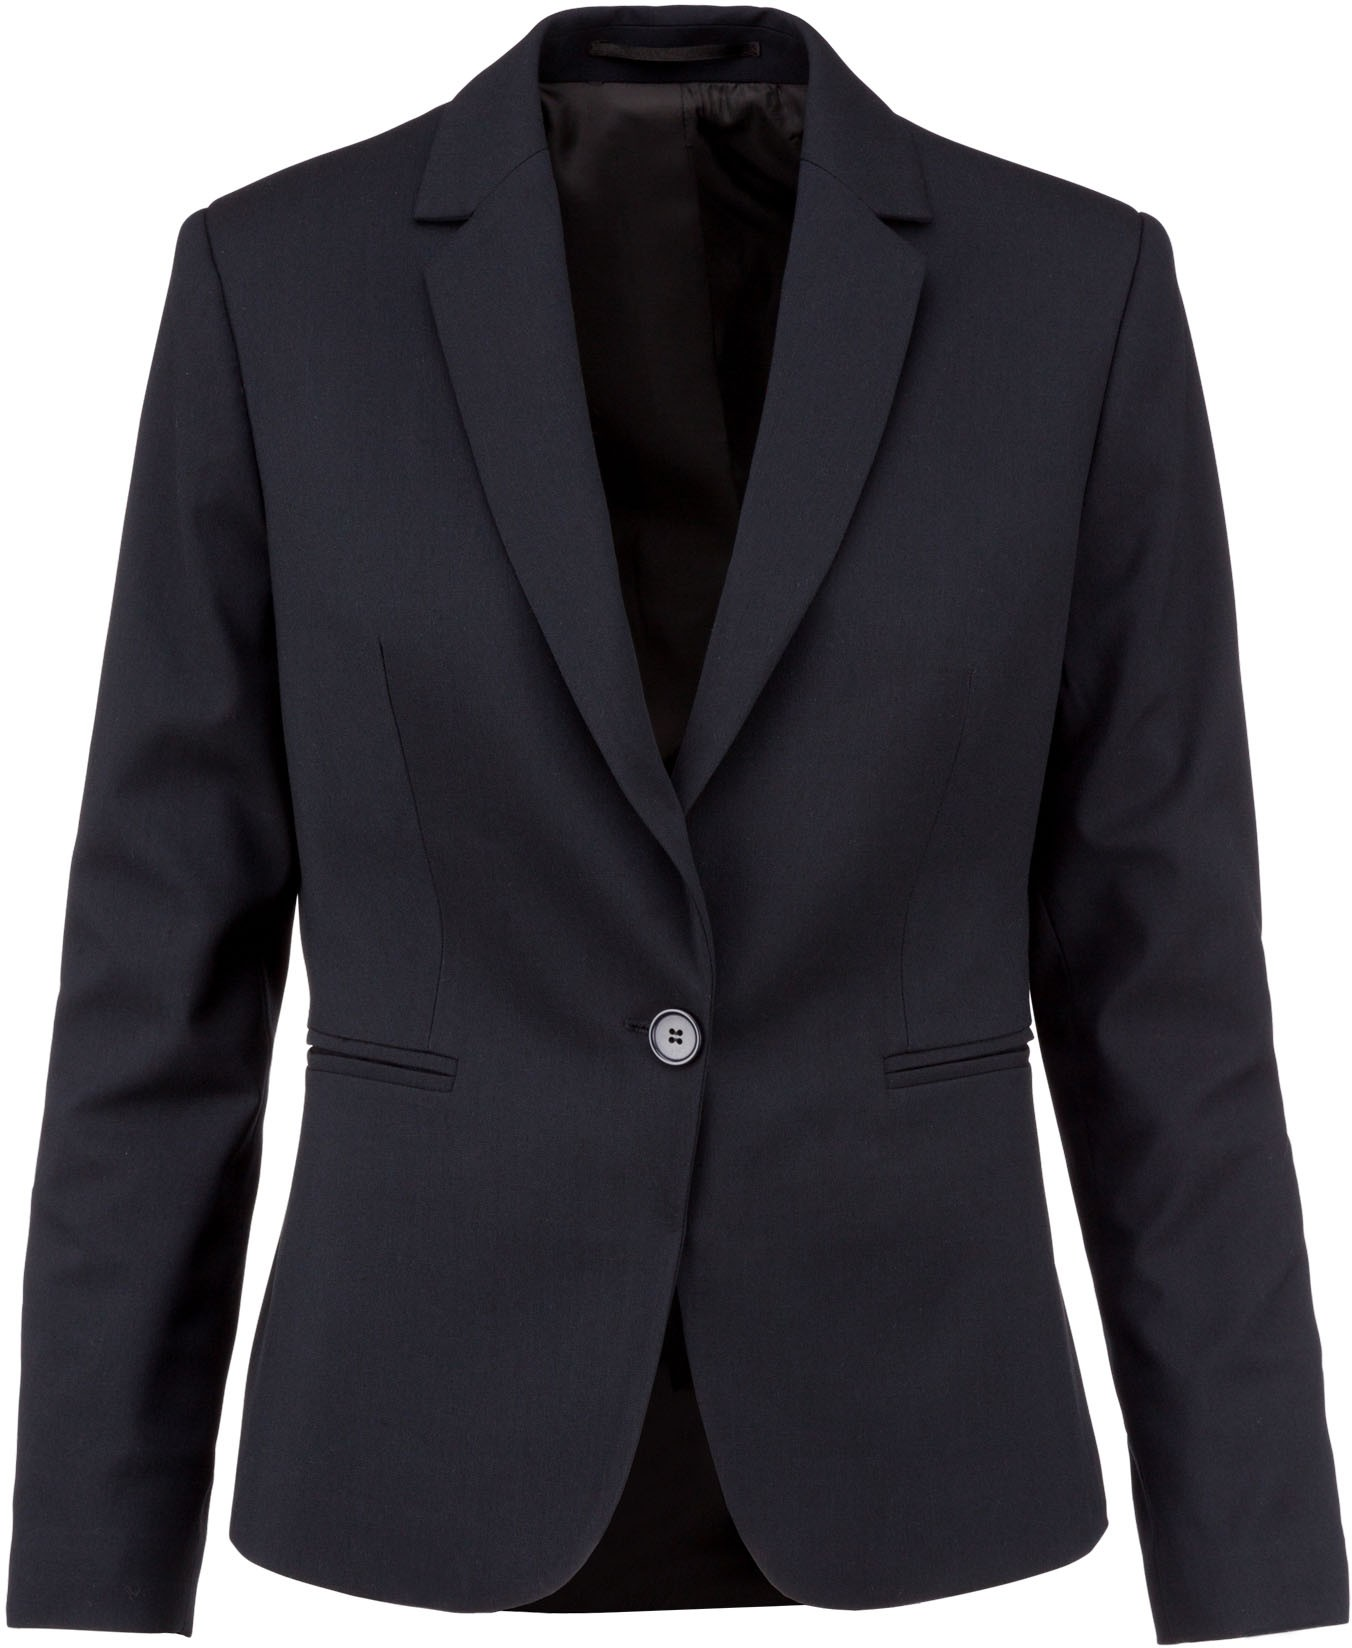 Ladies suit blazer